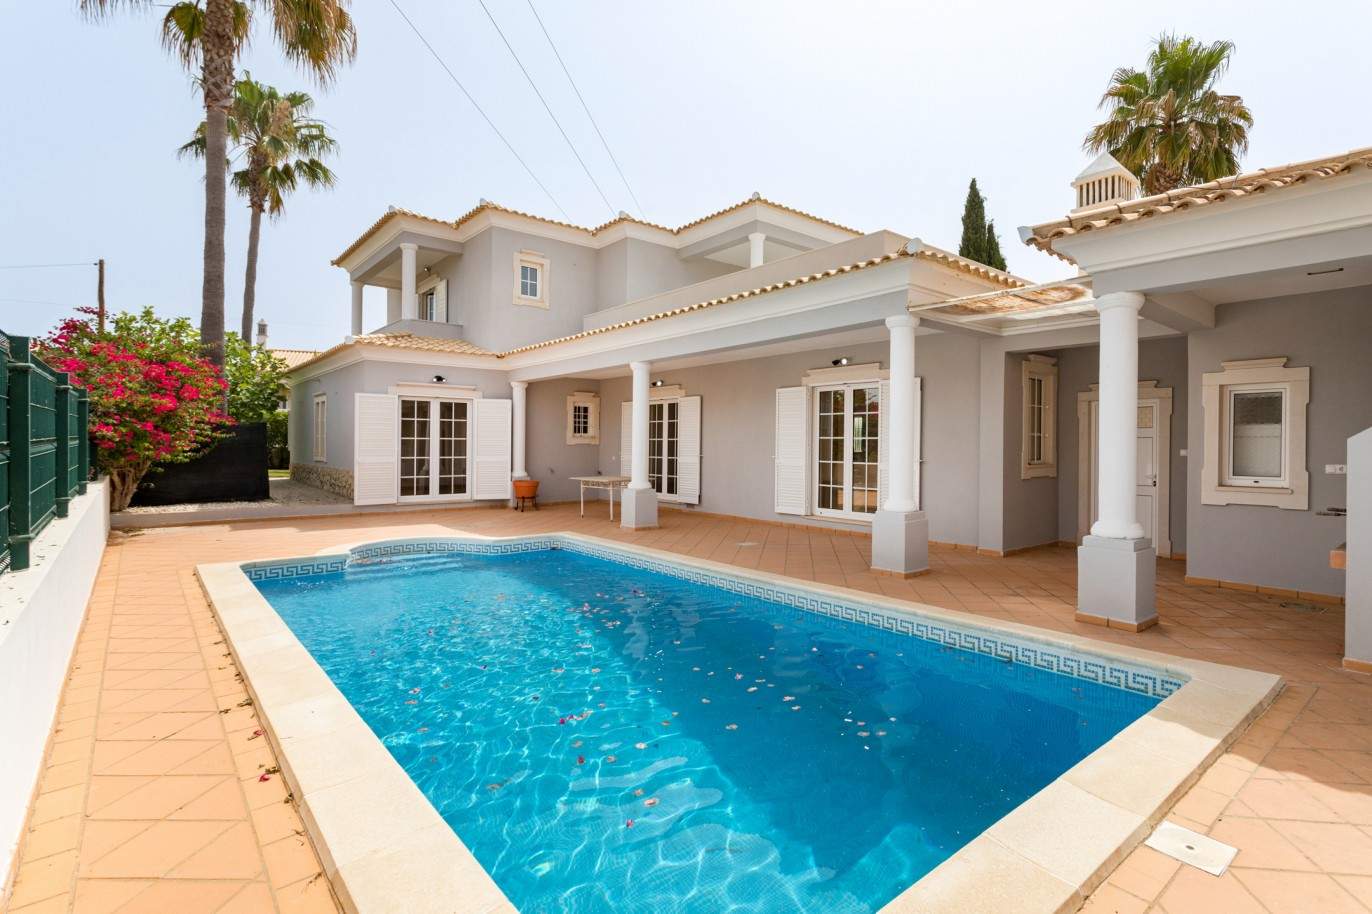 Moradia T4 com piscina, para venda em Quarteira, Algarve_201731